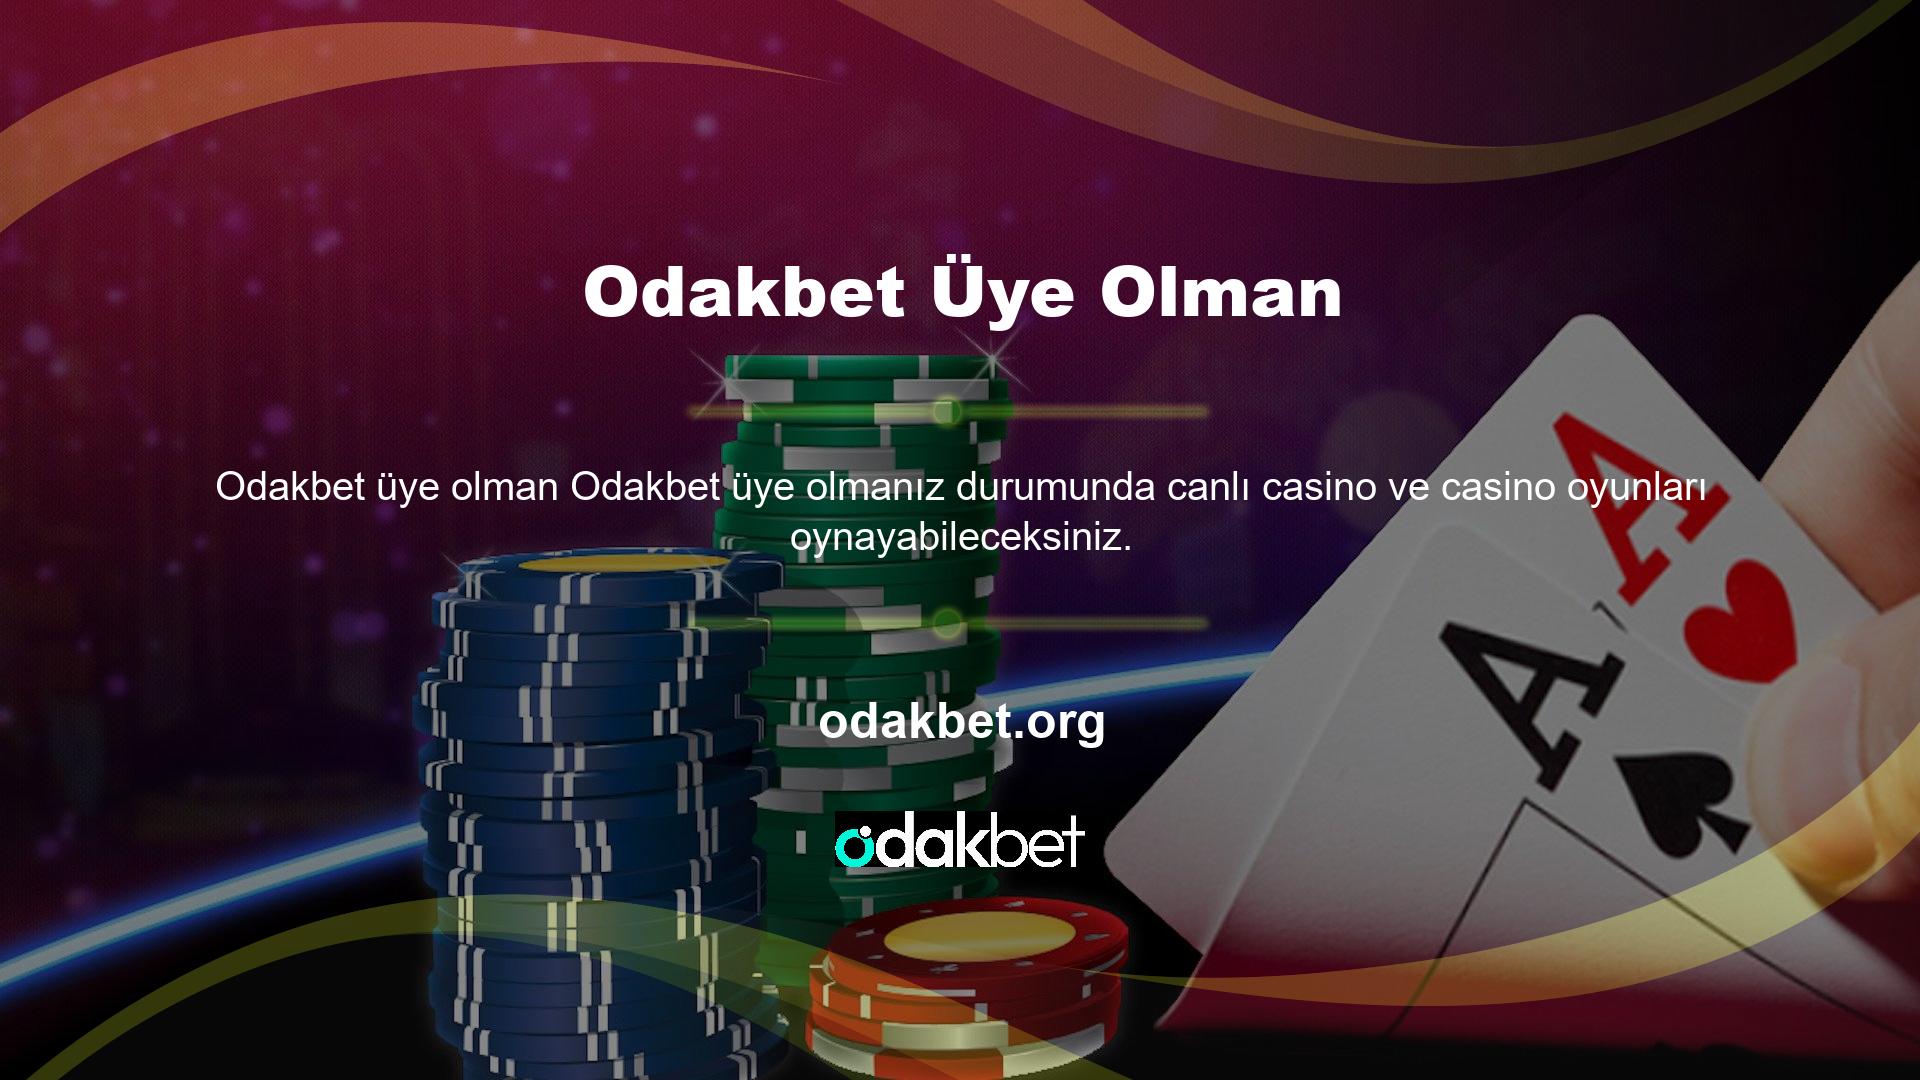 BTK'nın Casinolar ve Oyunlar Kanunu kapsamında aldığı karar sonucunda Türkiye'nin önde gelen casino ve oyun sitesi süresiz olarak kapatılabilir